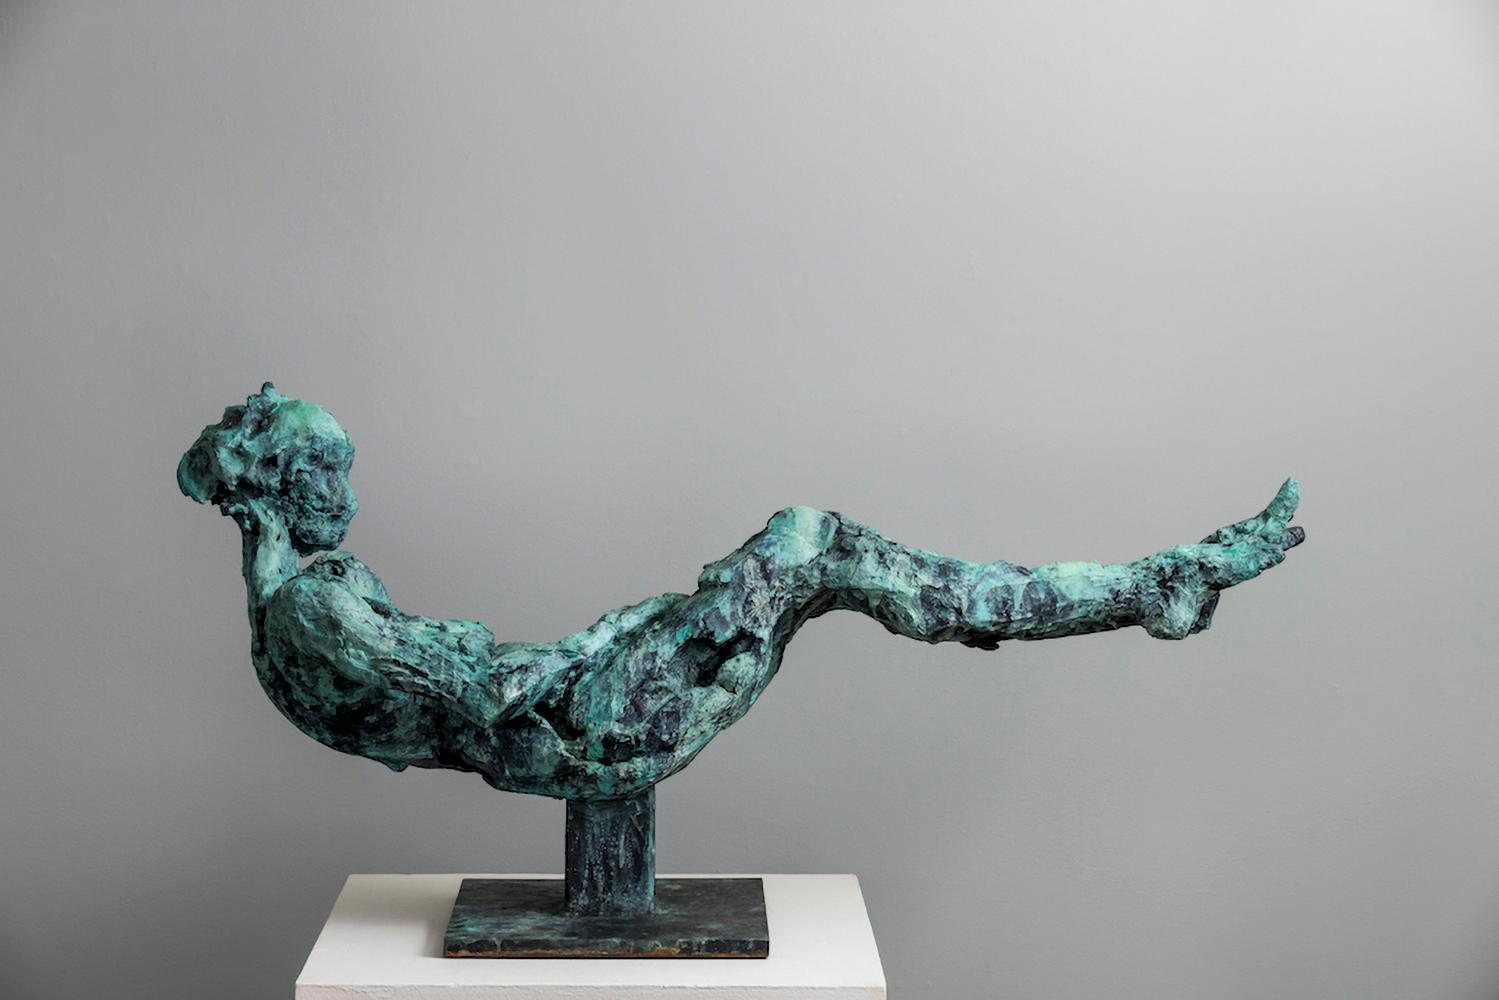 Cette grande statuette en bronze représentant un nu allongé, les jambes tendues, les bras rentrés et s'efforçant de se redresser, a été créée rapidement dans des gestes qui frôlent l'abstraction. Le formalisme moderne et dynamique qui s'écarte du